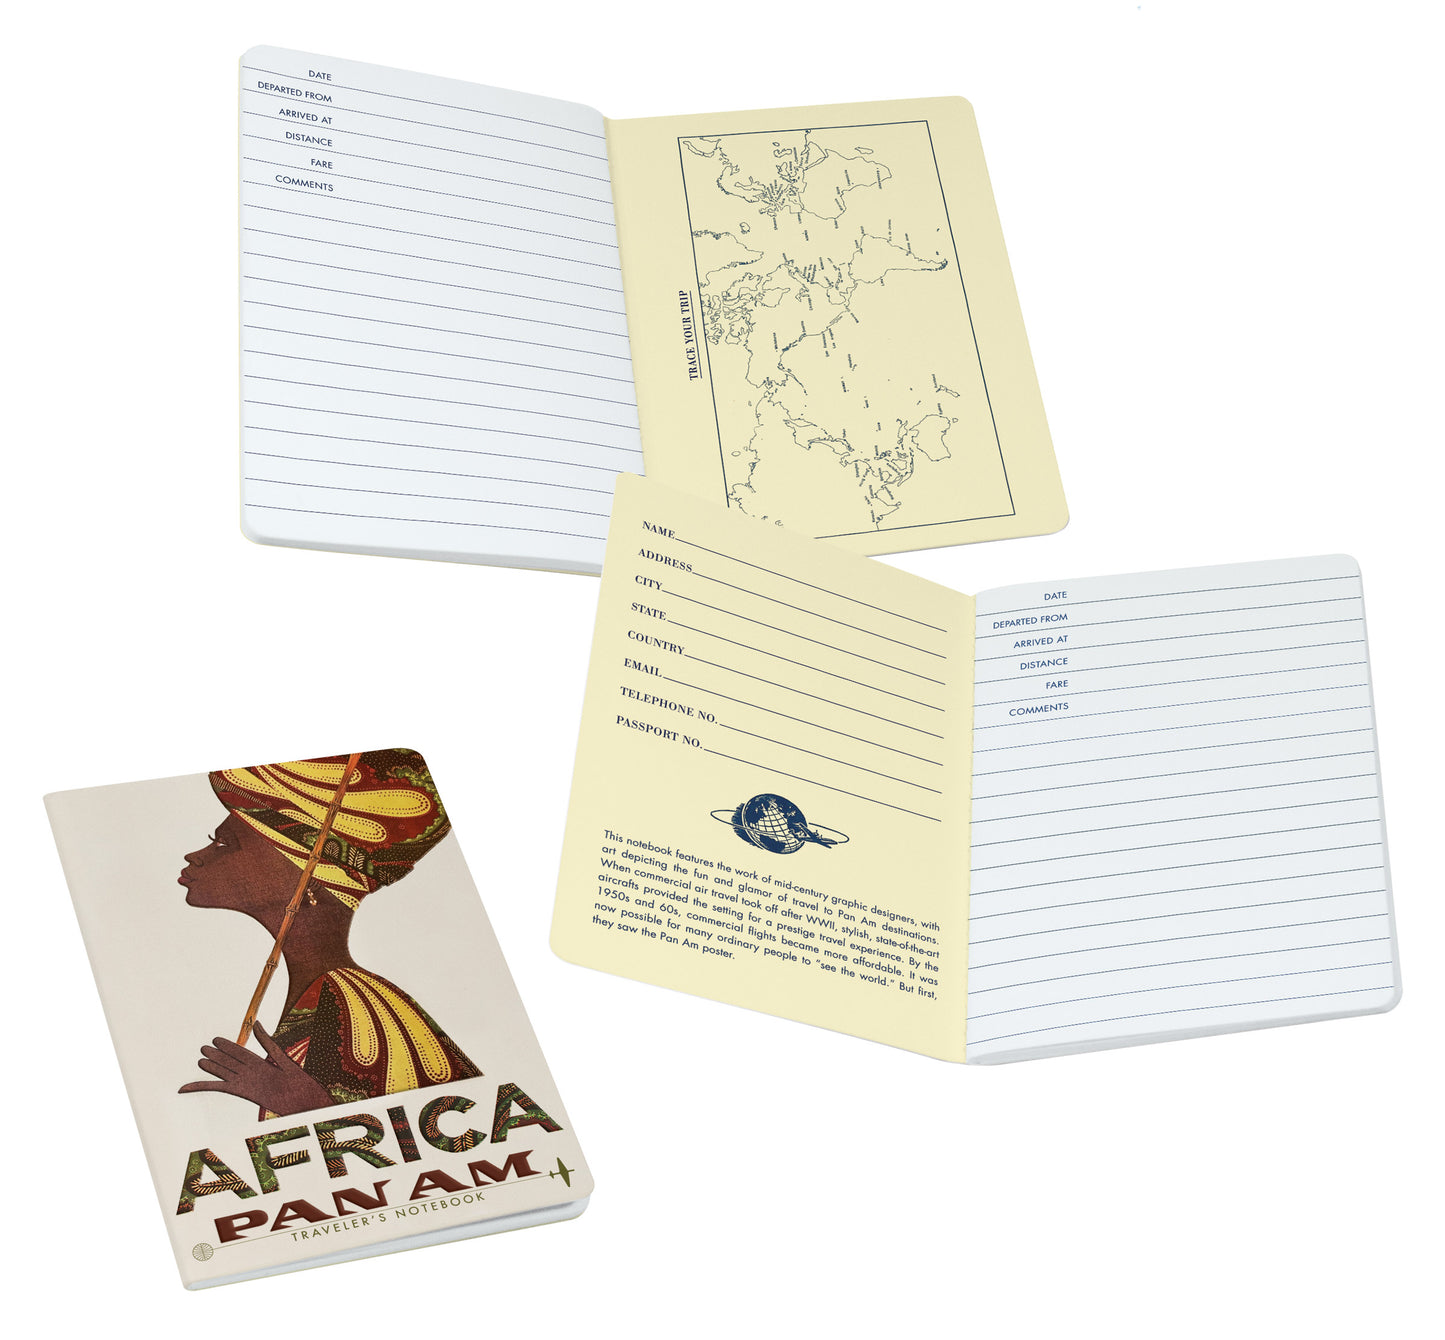 Africa Pan AM Traveler's Notebook